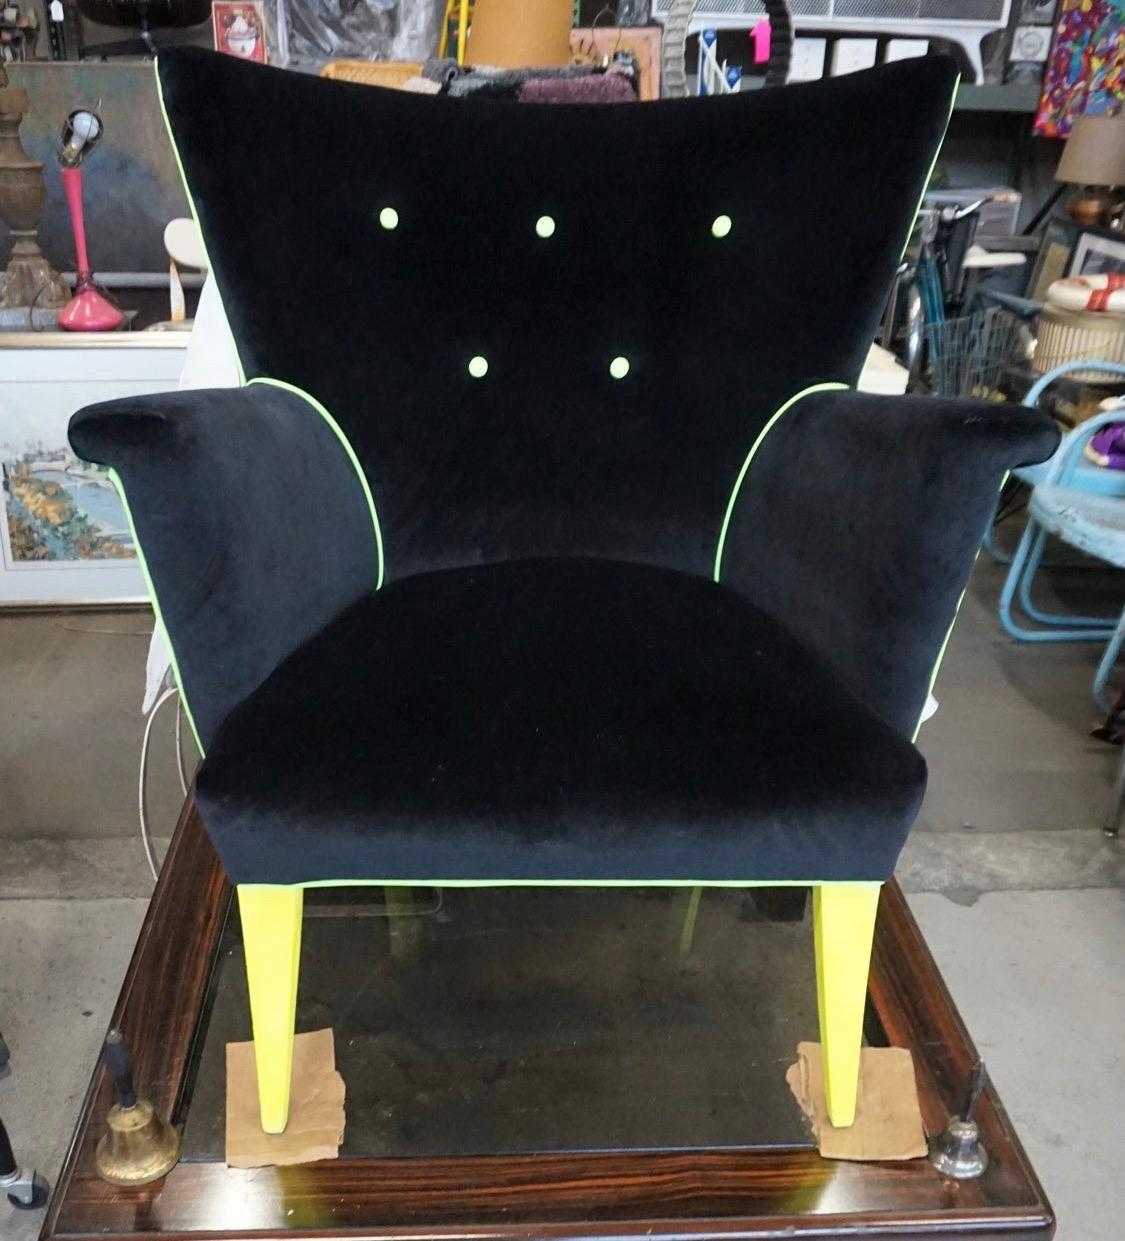 Neu gepolsterter Guillermo-Flügelsessel und ikonischer Hollywood-Regency-Sessel. Der Hauptstoff ist schwarzer Samt, und auch die neongelbe Paspel ist nicht zu übersehen. Dies ist ein sehr bequemer Stuhl. Heute ist das Zuhause mehr denn je dort, wo